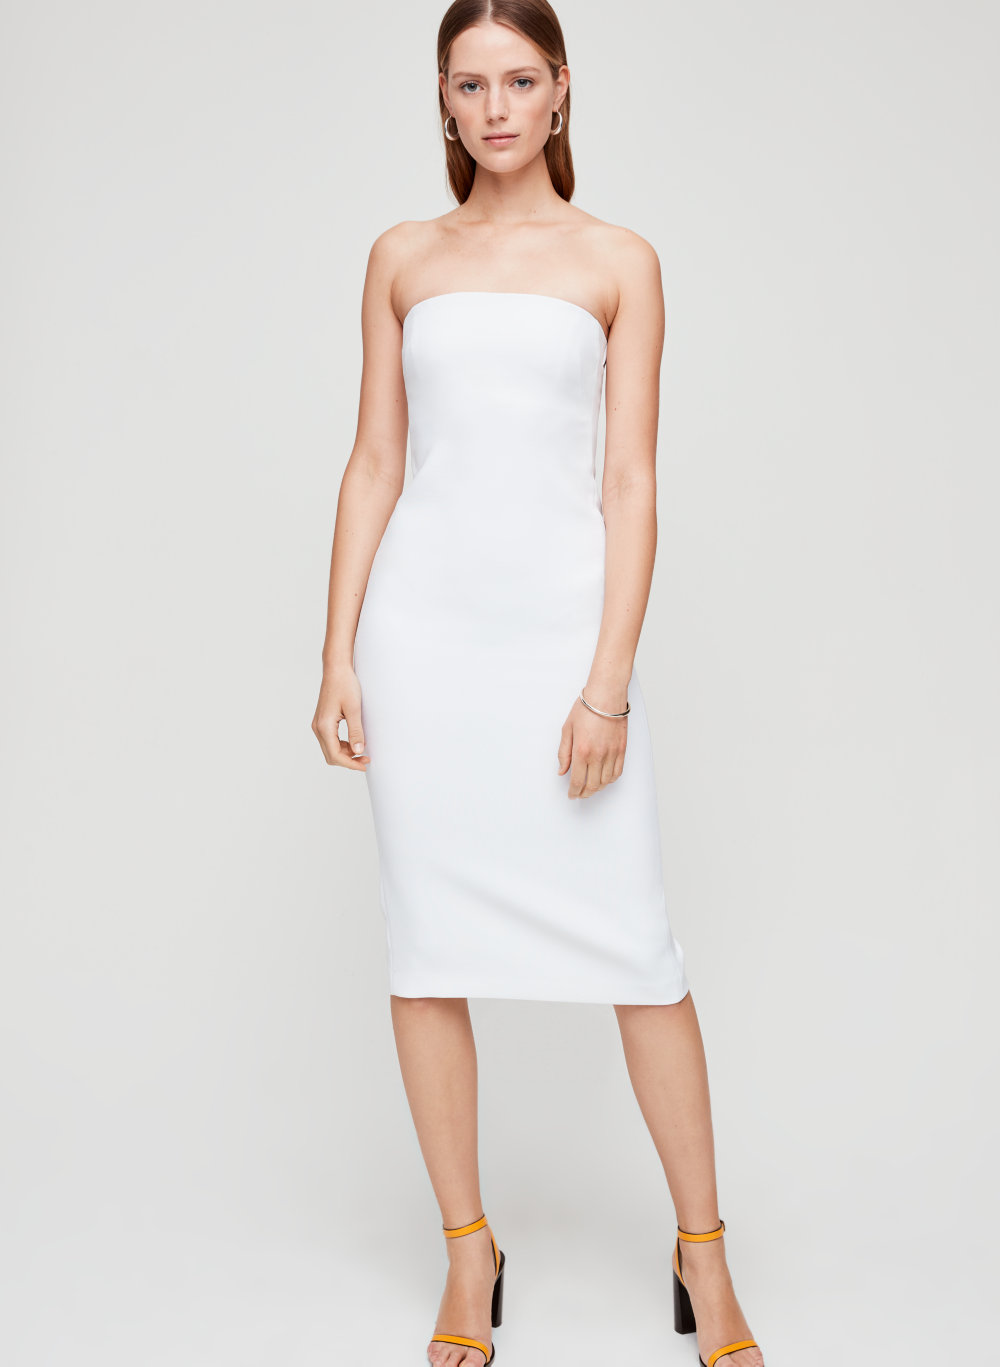 white strapless bodycon dress